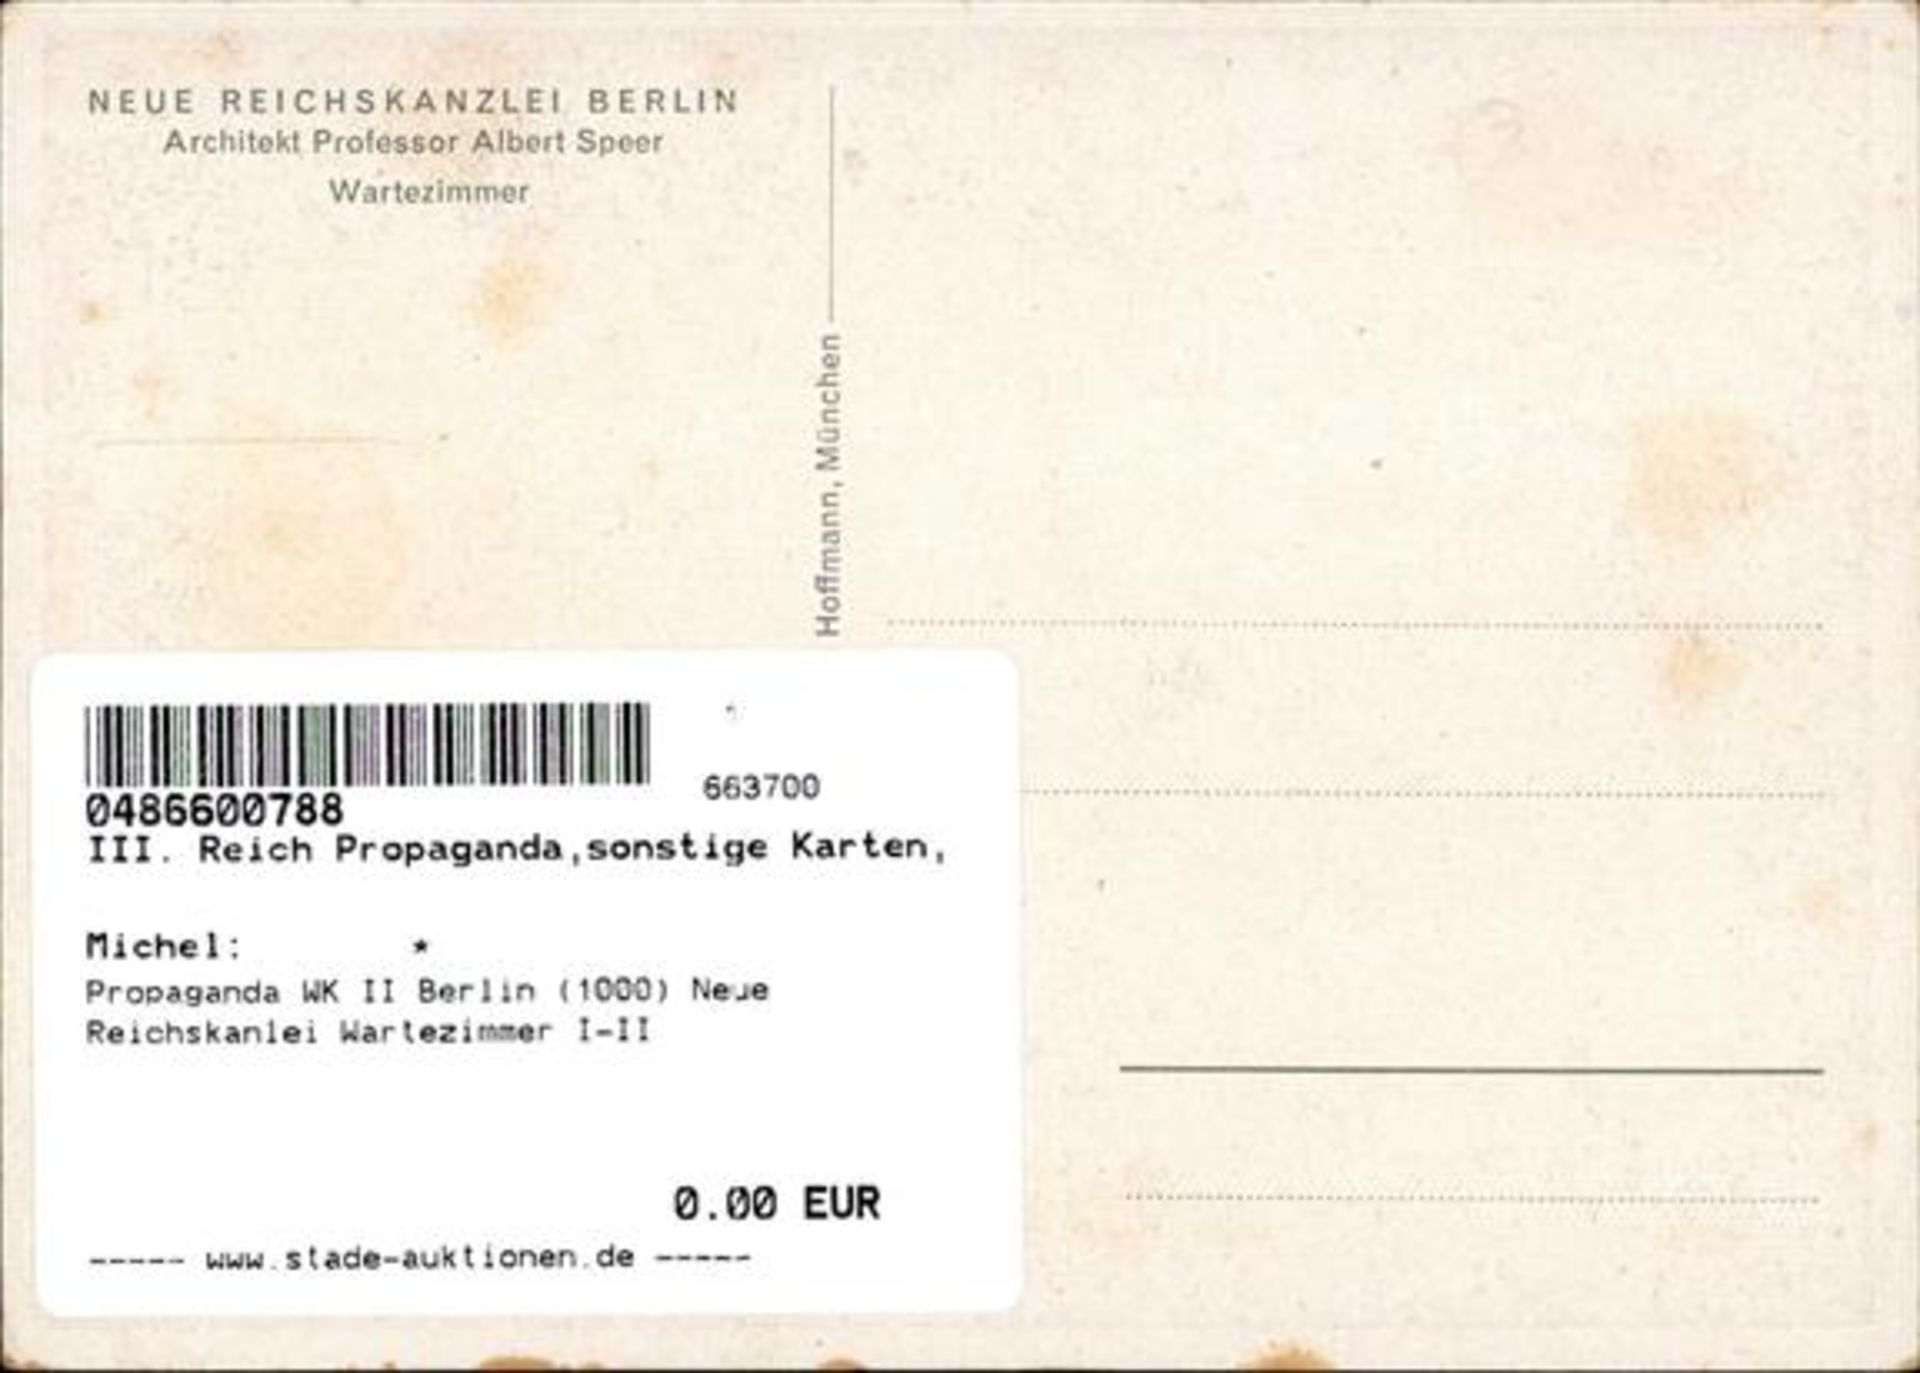 Propaganda WK II Berlin (1000) Neue Reichskanzlei Wartezimmer I-II - Bild 2 aus 2